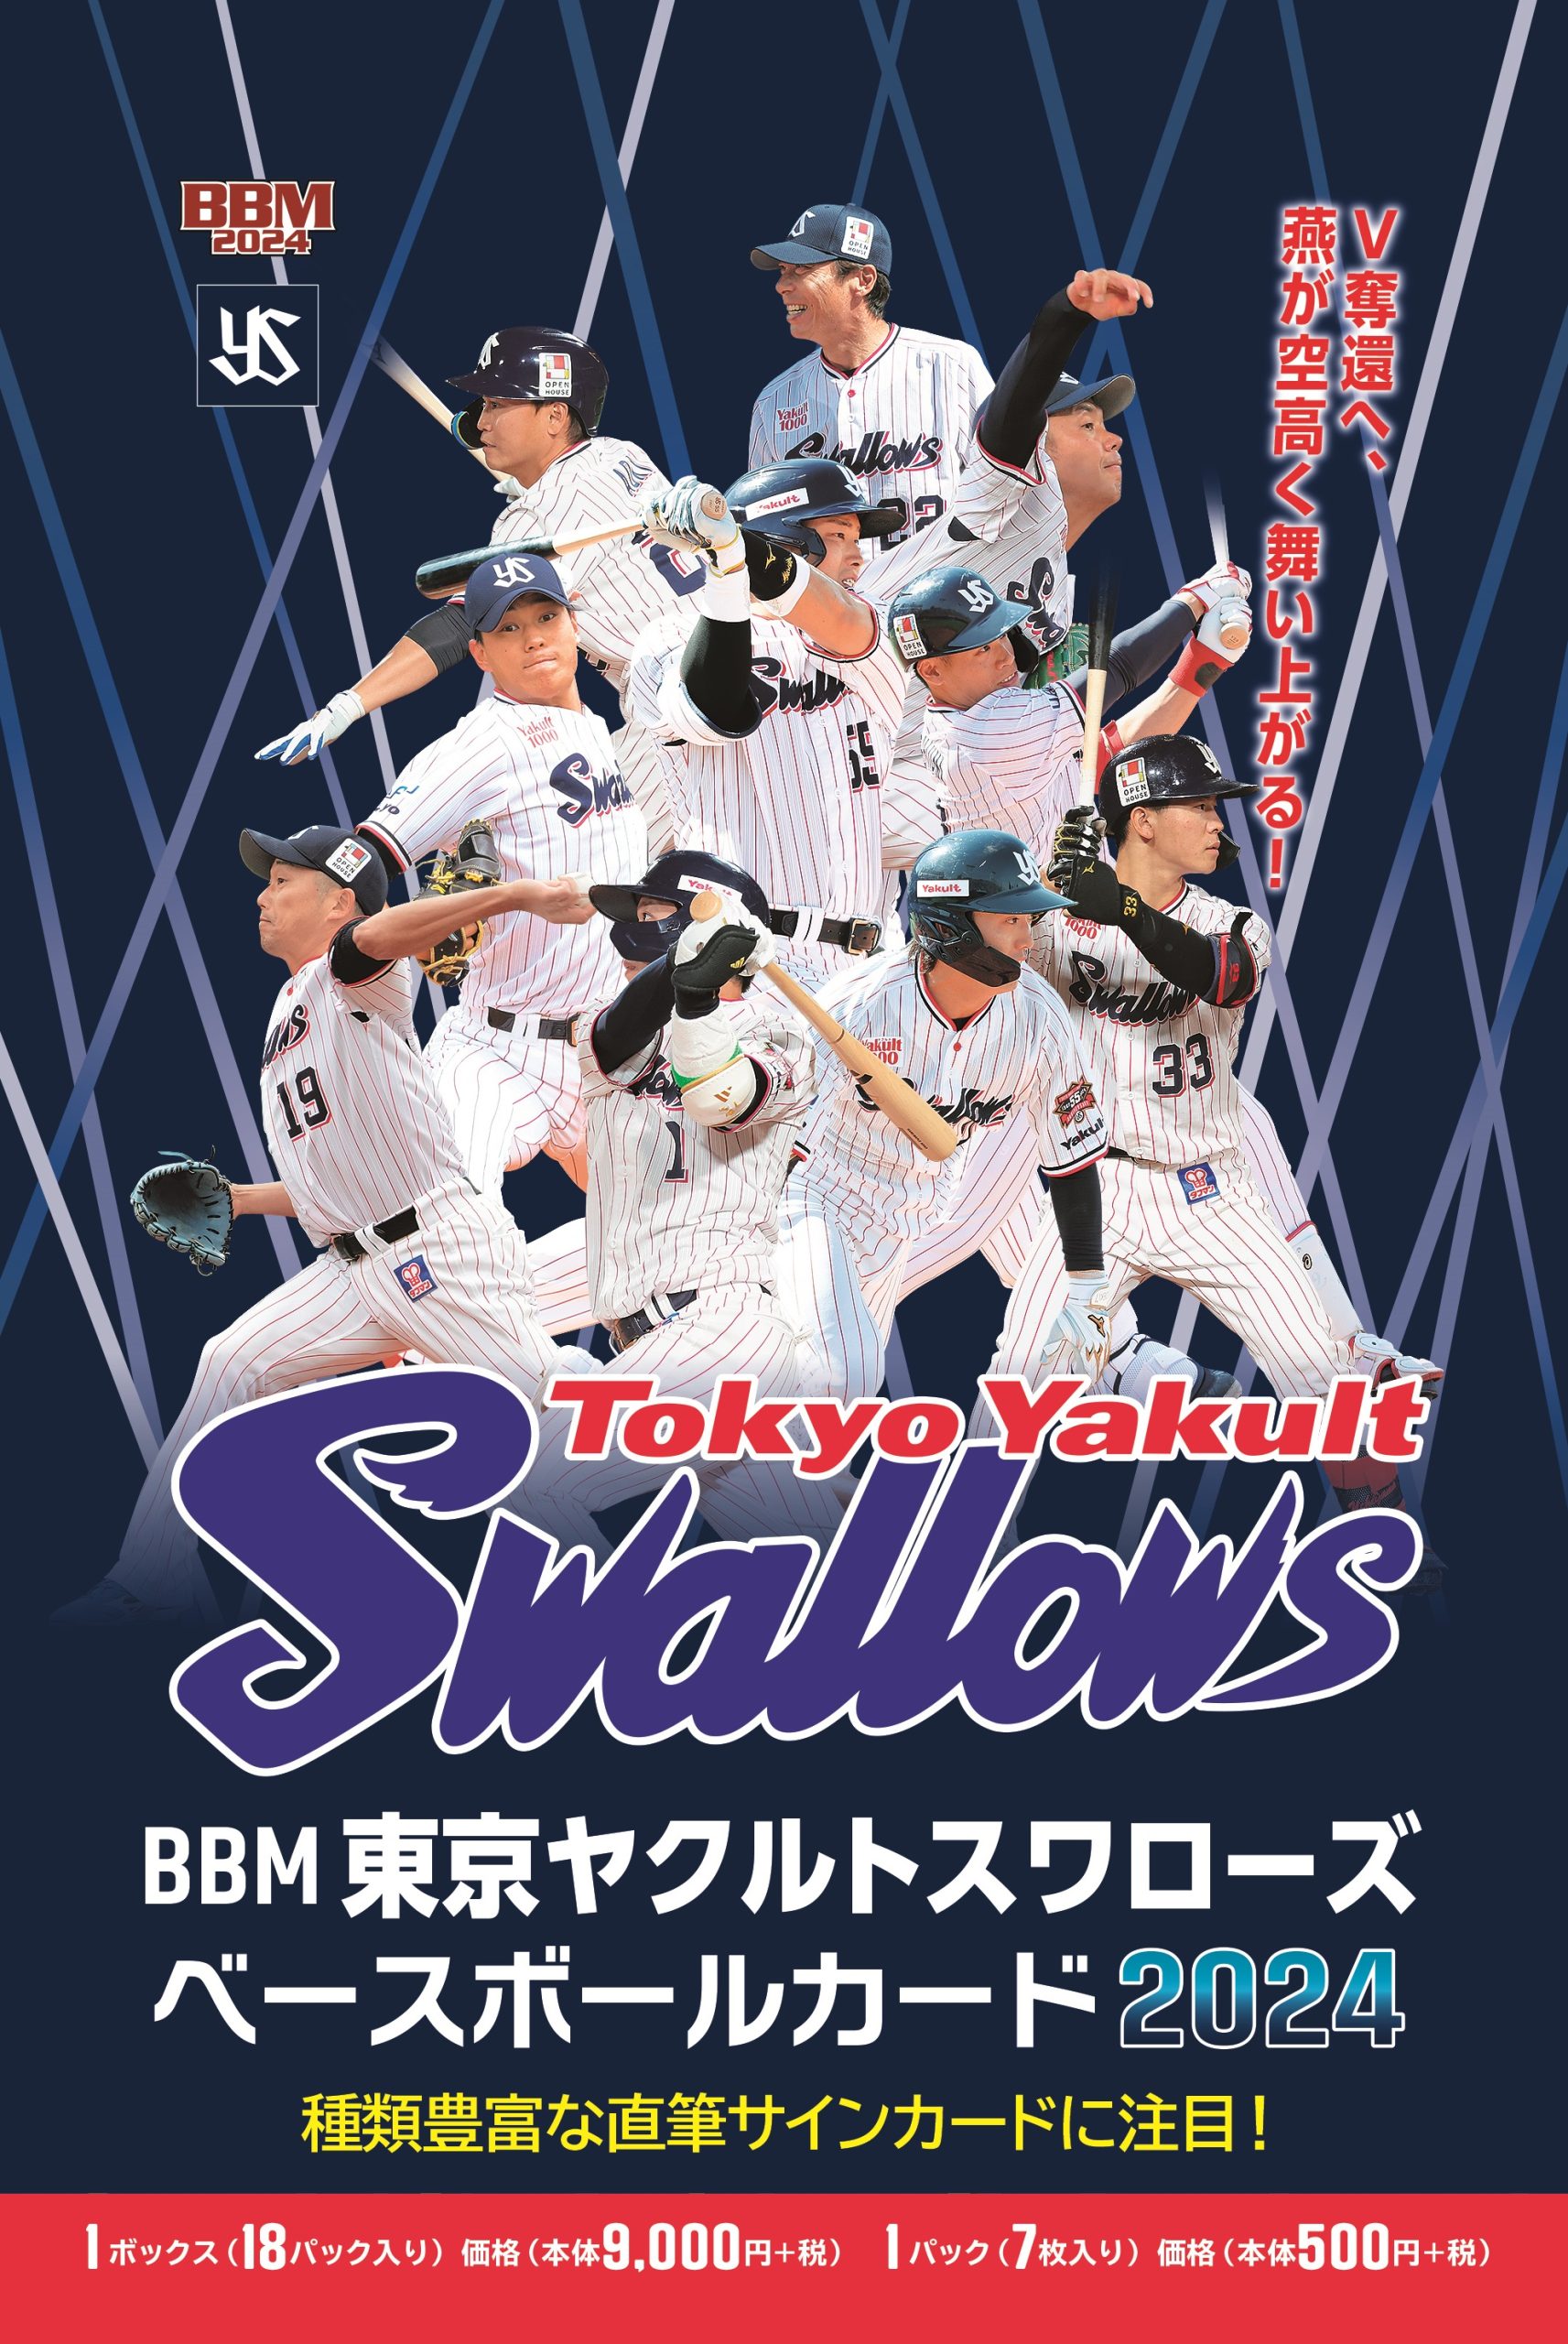 ⚾ BBM 東京ヤクルトスワローズ ベースボールカード 2024【製品情報 